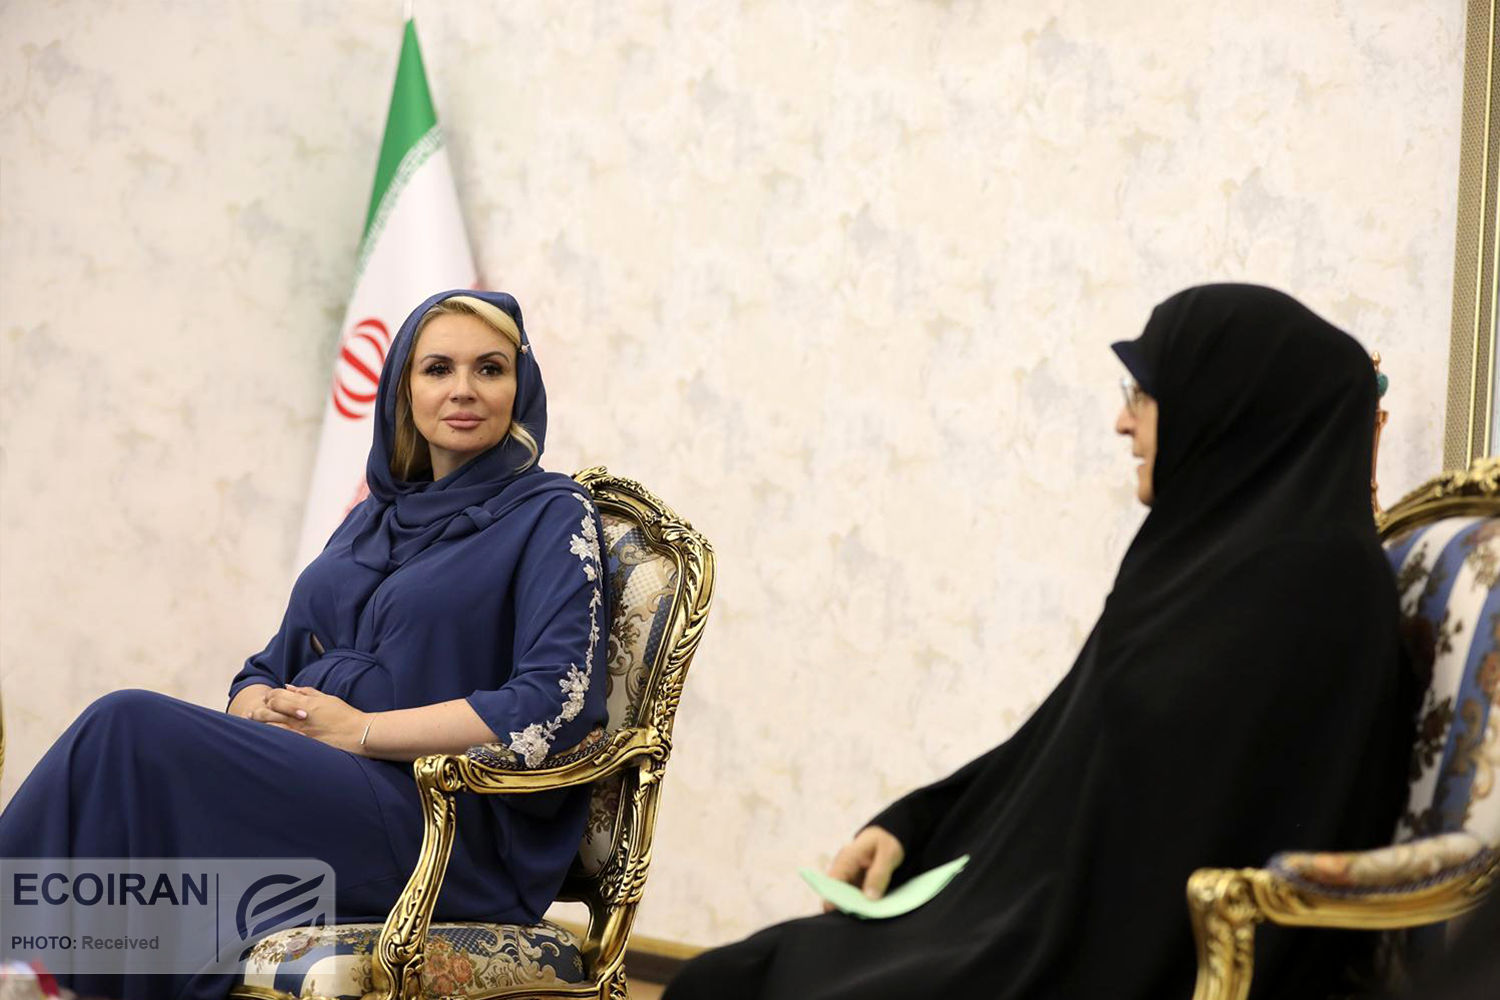 تیپ حاشیه ساز وزیر زن صربستان در ایران!